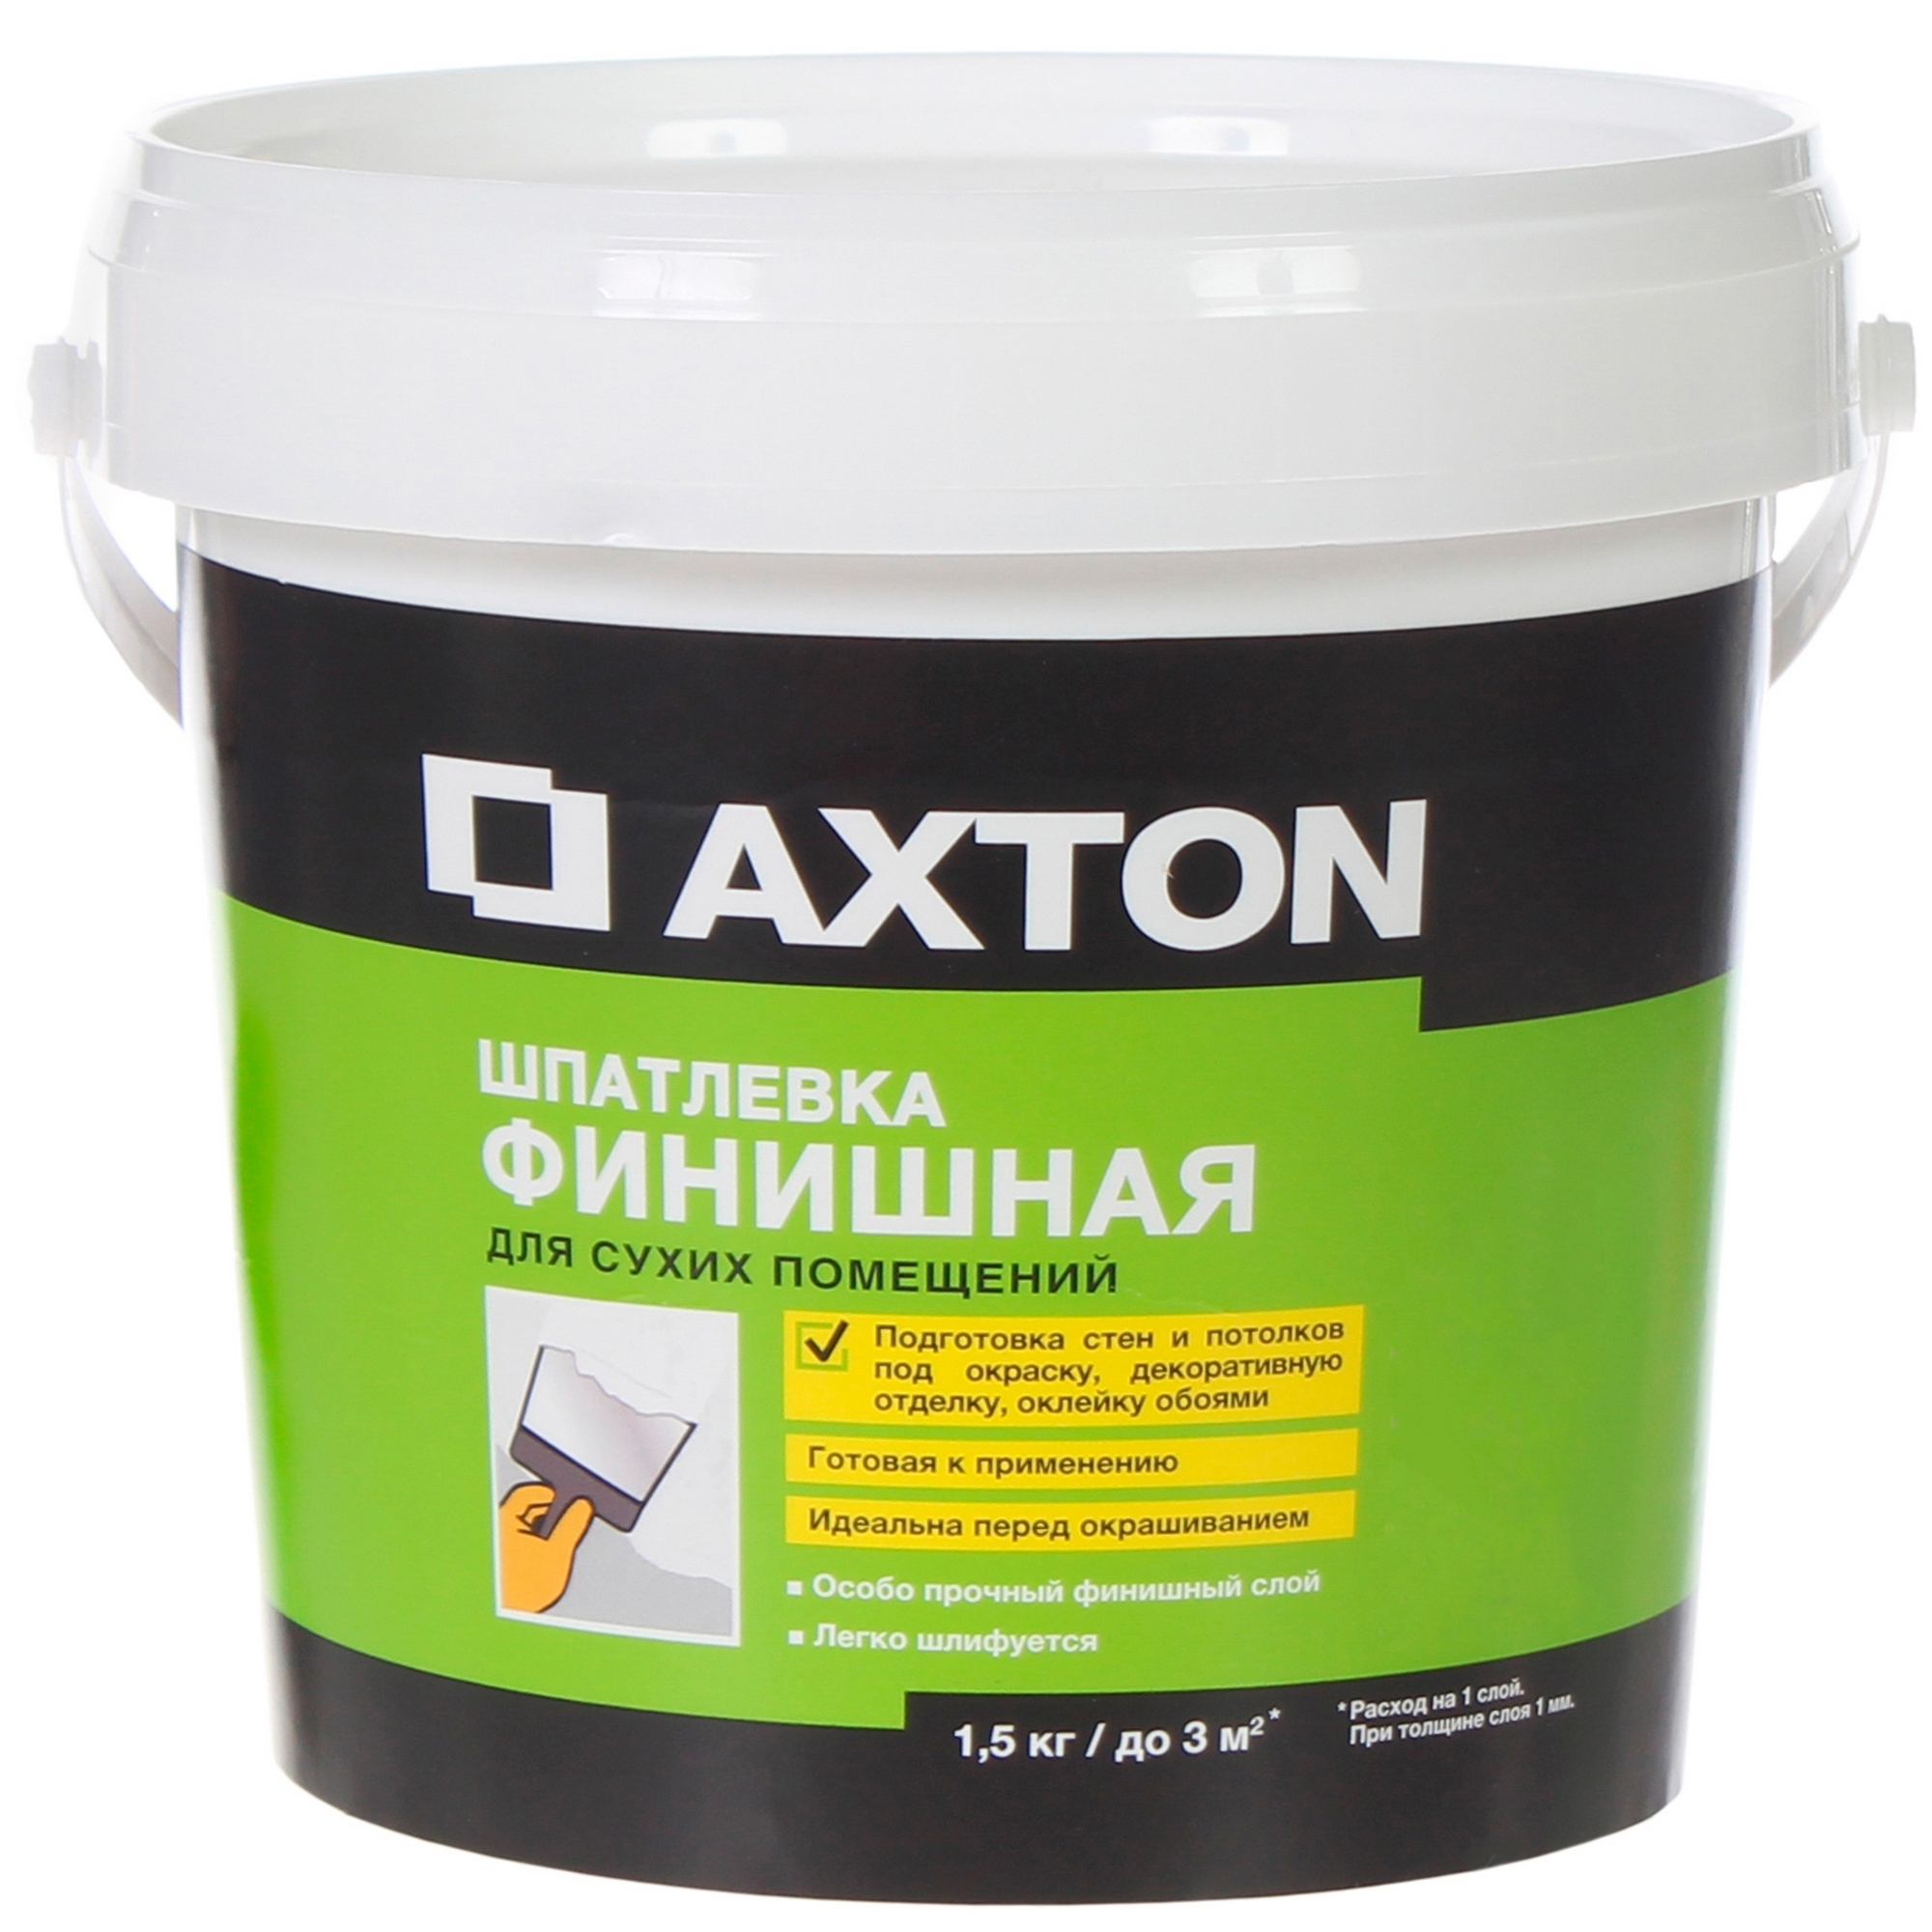 Шпатлёвка финишная Axton для сухих помний 1.5 кг ️  по цене 55 .